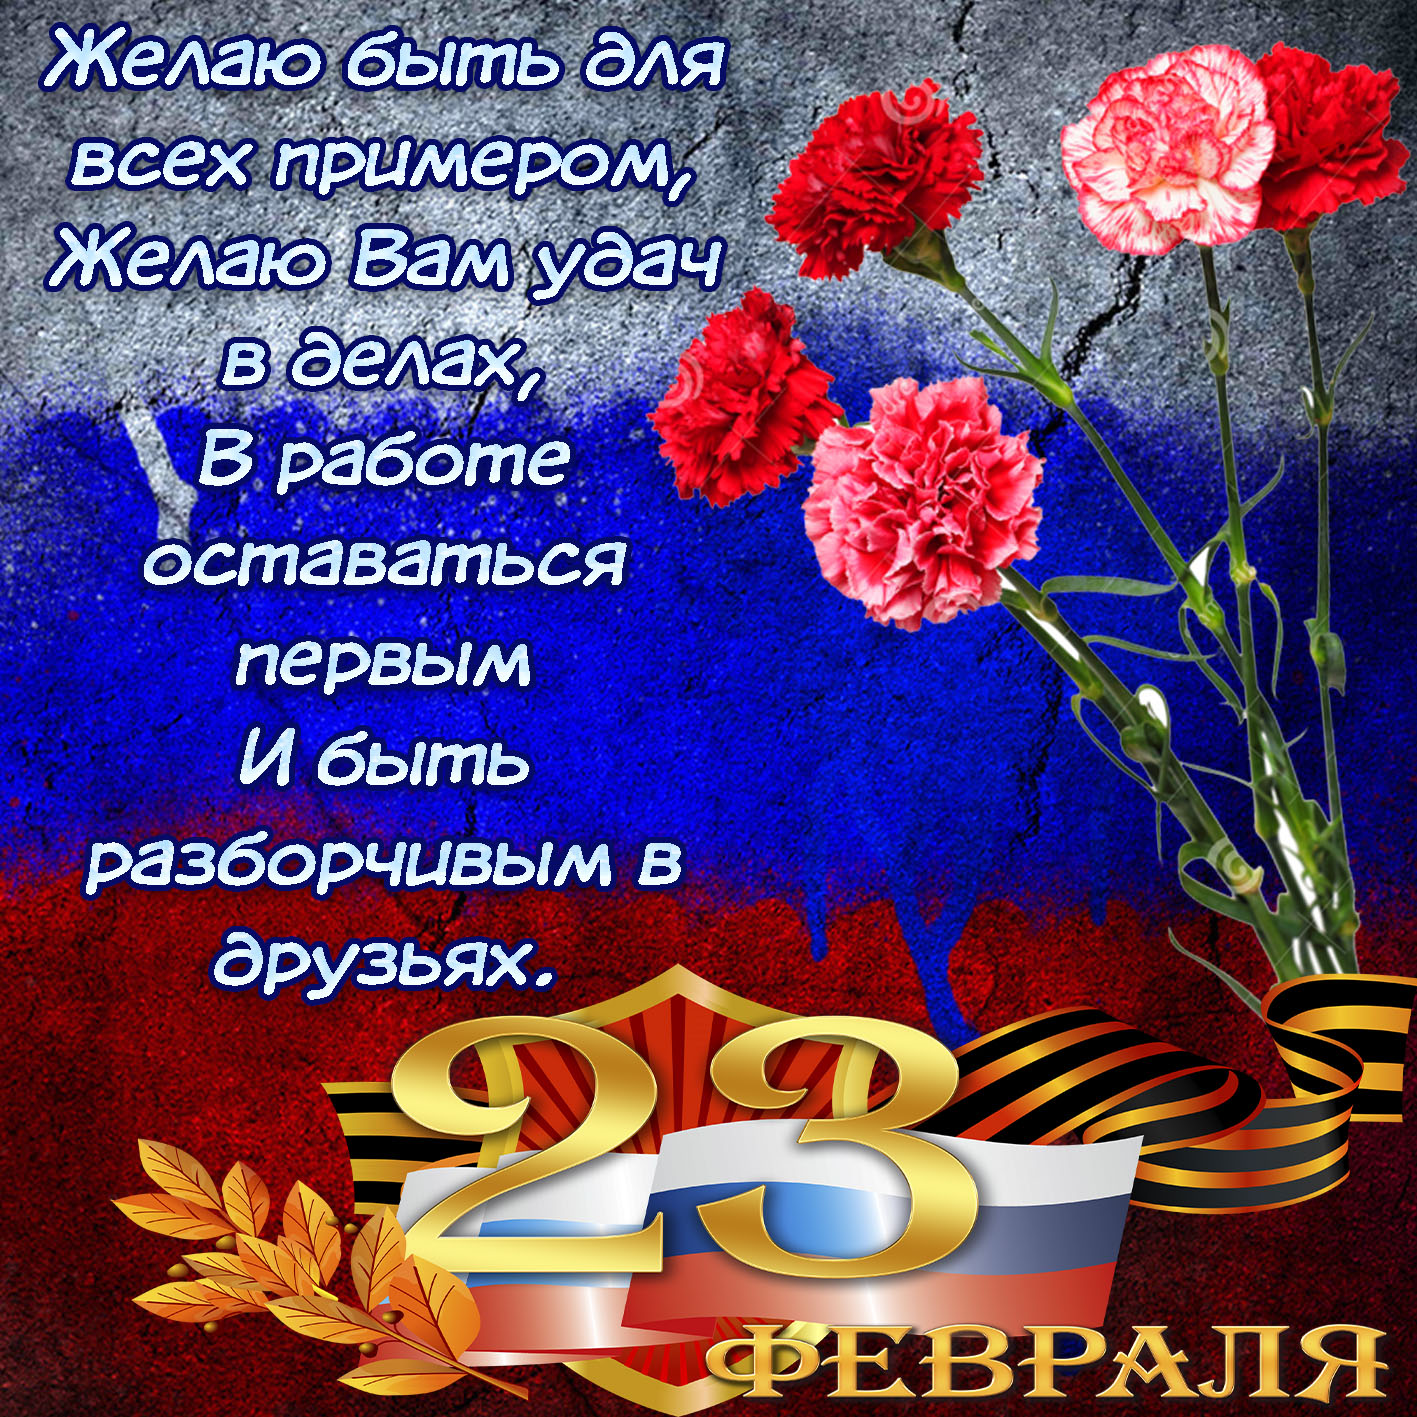 Поздравление с 23 февраля мужчинам на татарском. Поздравление с 23 февраля. С 23 февраля открытка с поздравлением. С днём защитника Отечества 23 февраля. Поздравление с 23 февраля мужчинам.